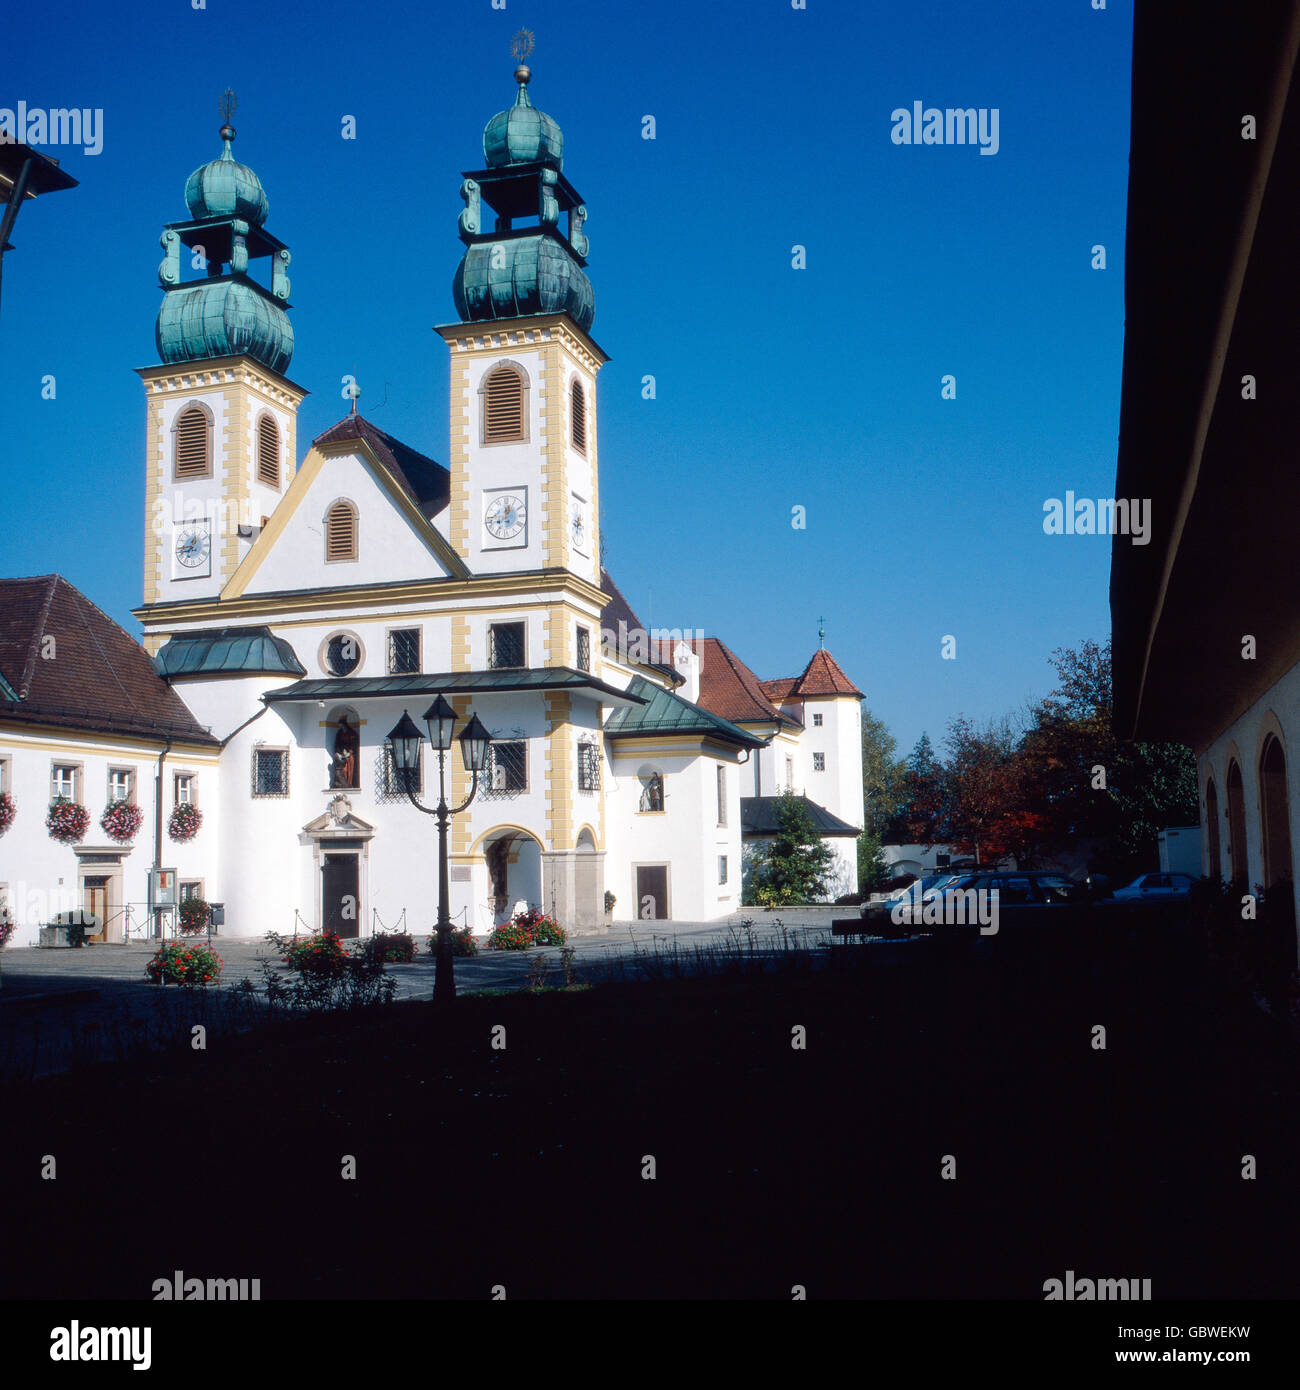 Reise nach Deutschland, Bayern. Travel to Germany, Bavaria. Passau in den 1980er Jahren. Passau in the 1980s. Mariahilfkirche, Passau. Pilgrimage Church Mariahilf. Stock Photo